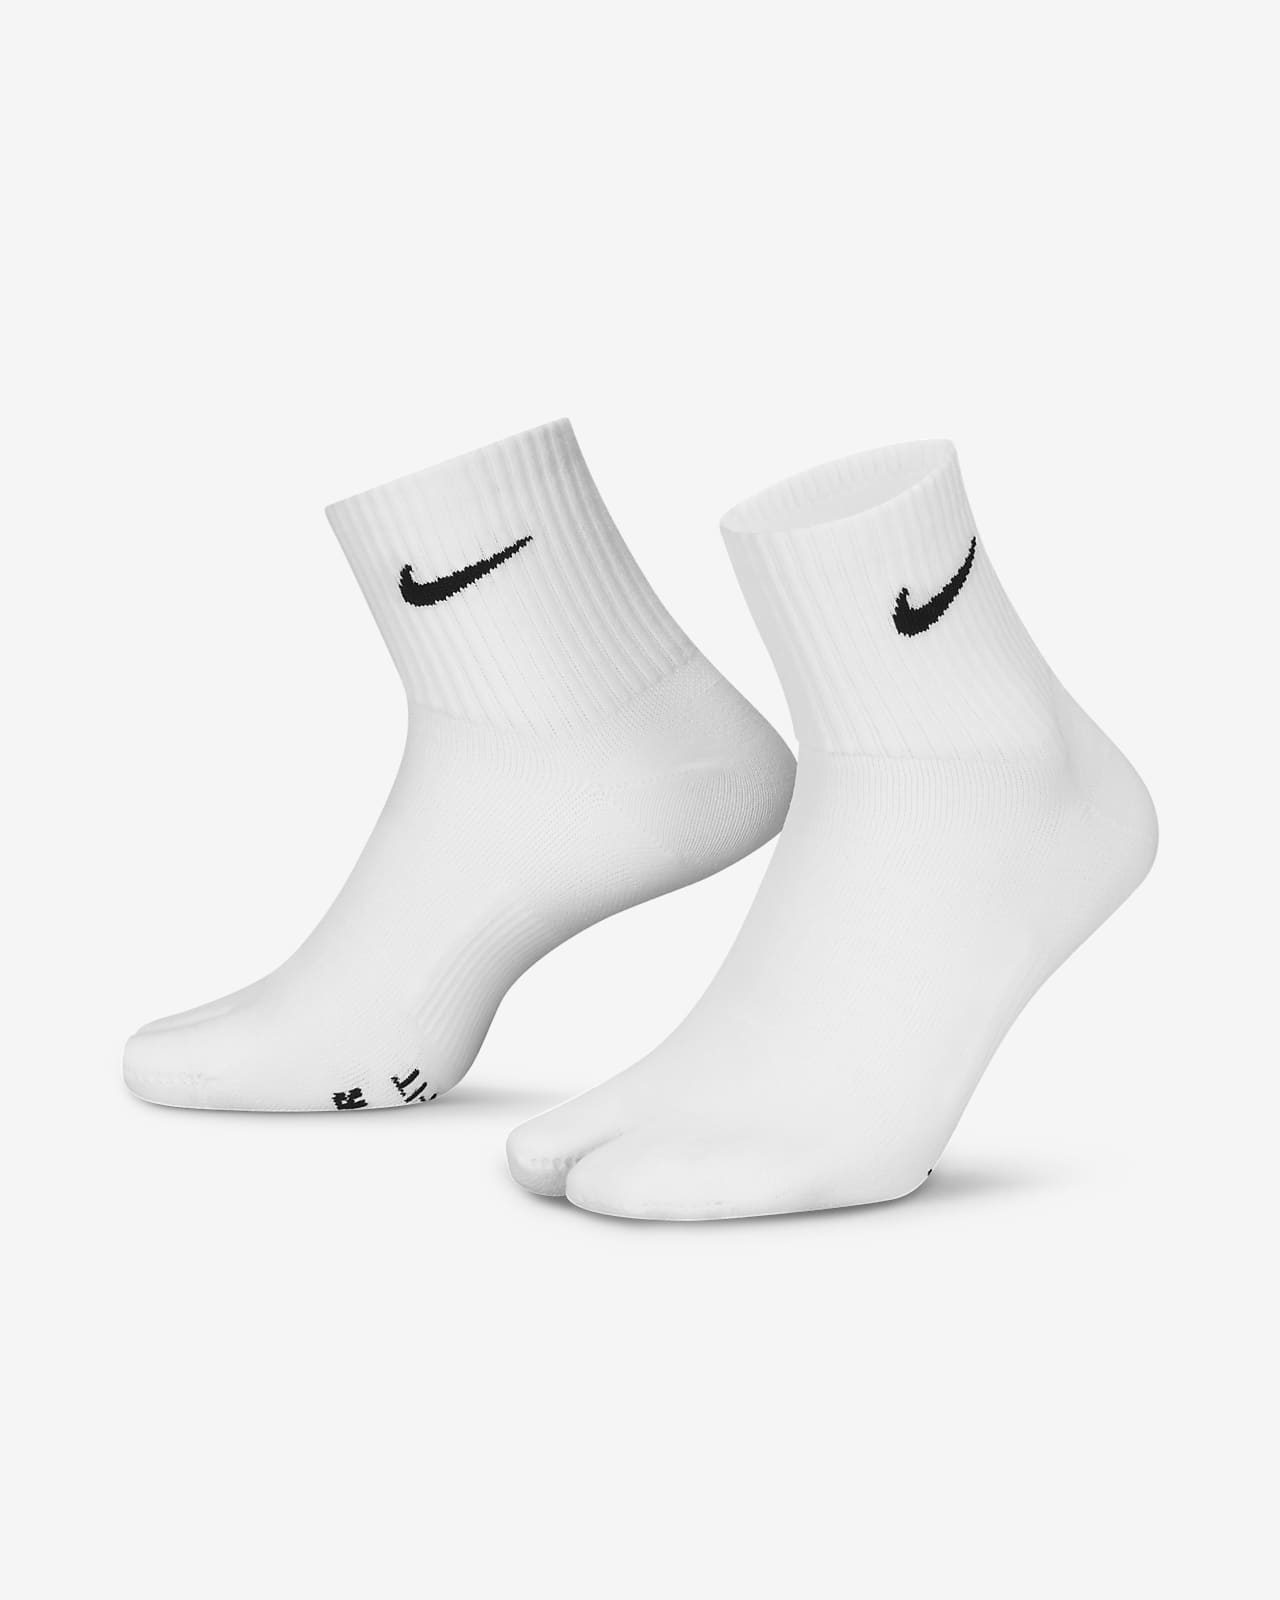 Socquettes fendues légères Nike Everyday Plus